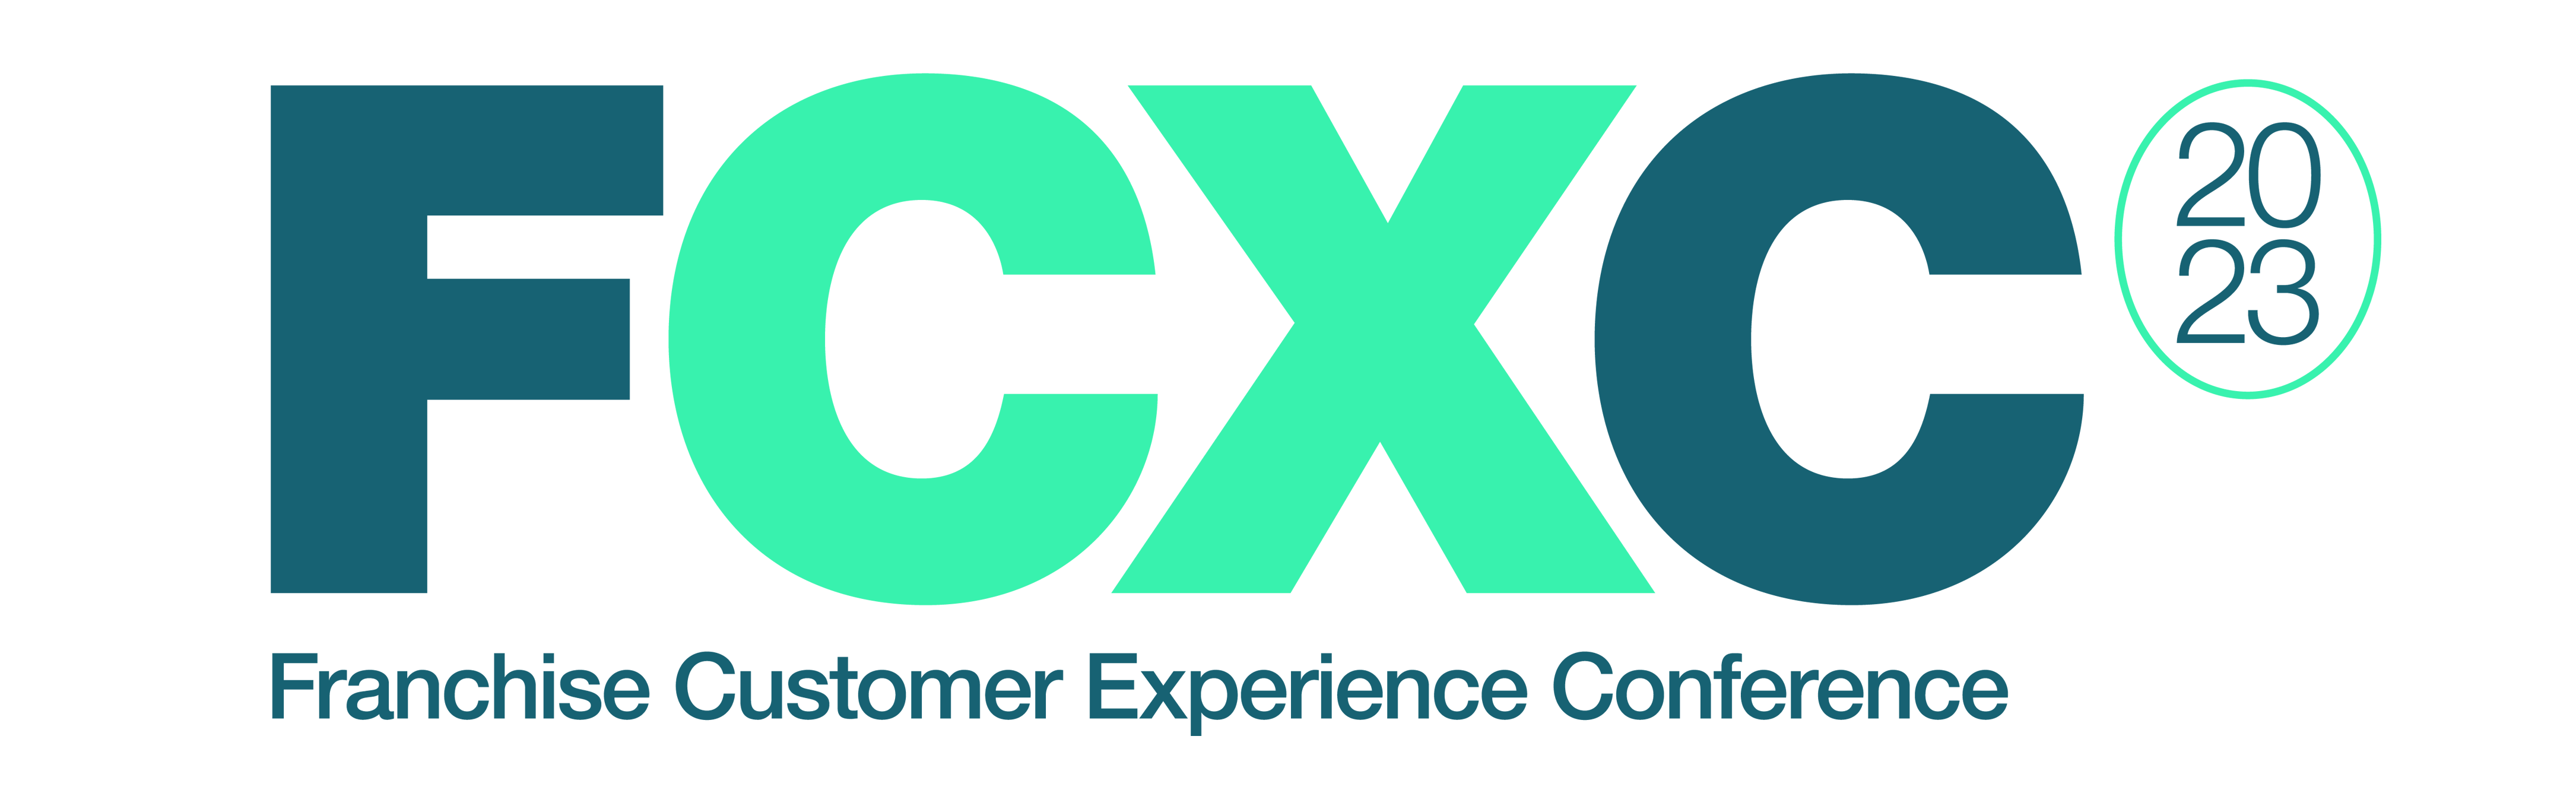 23 FCXC Updated Logo